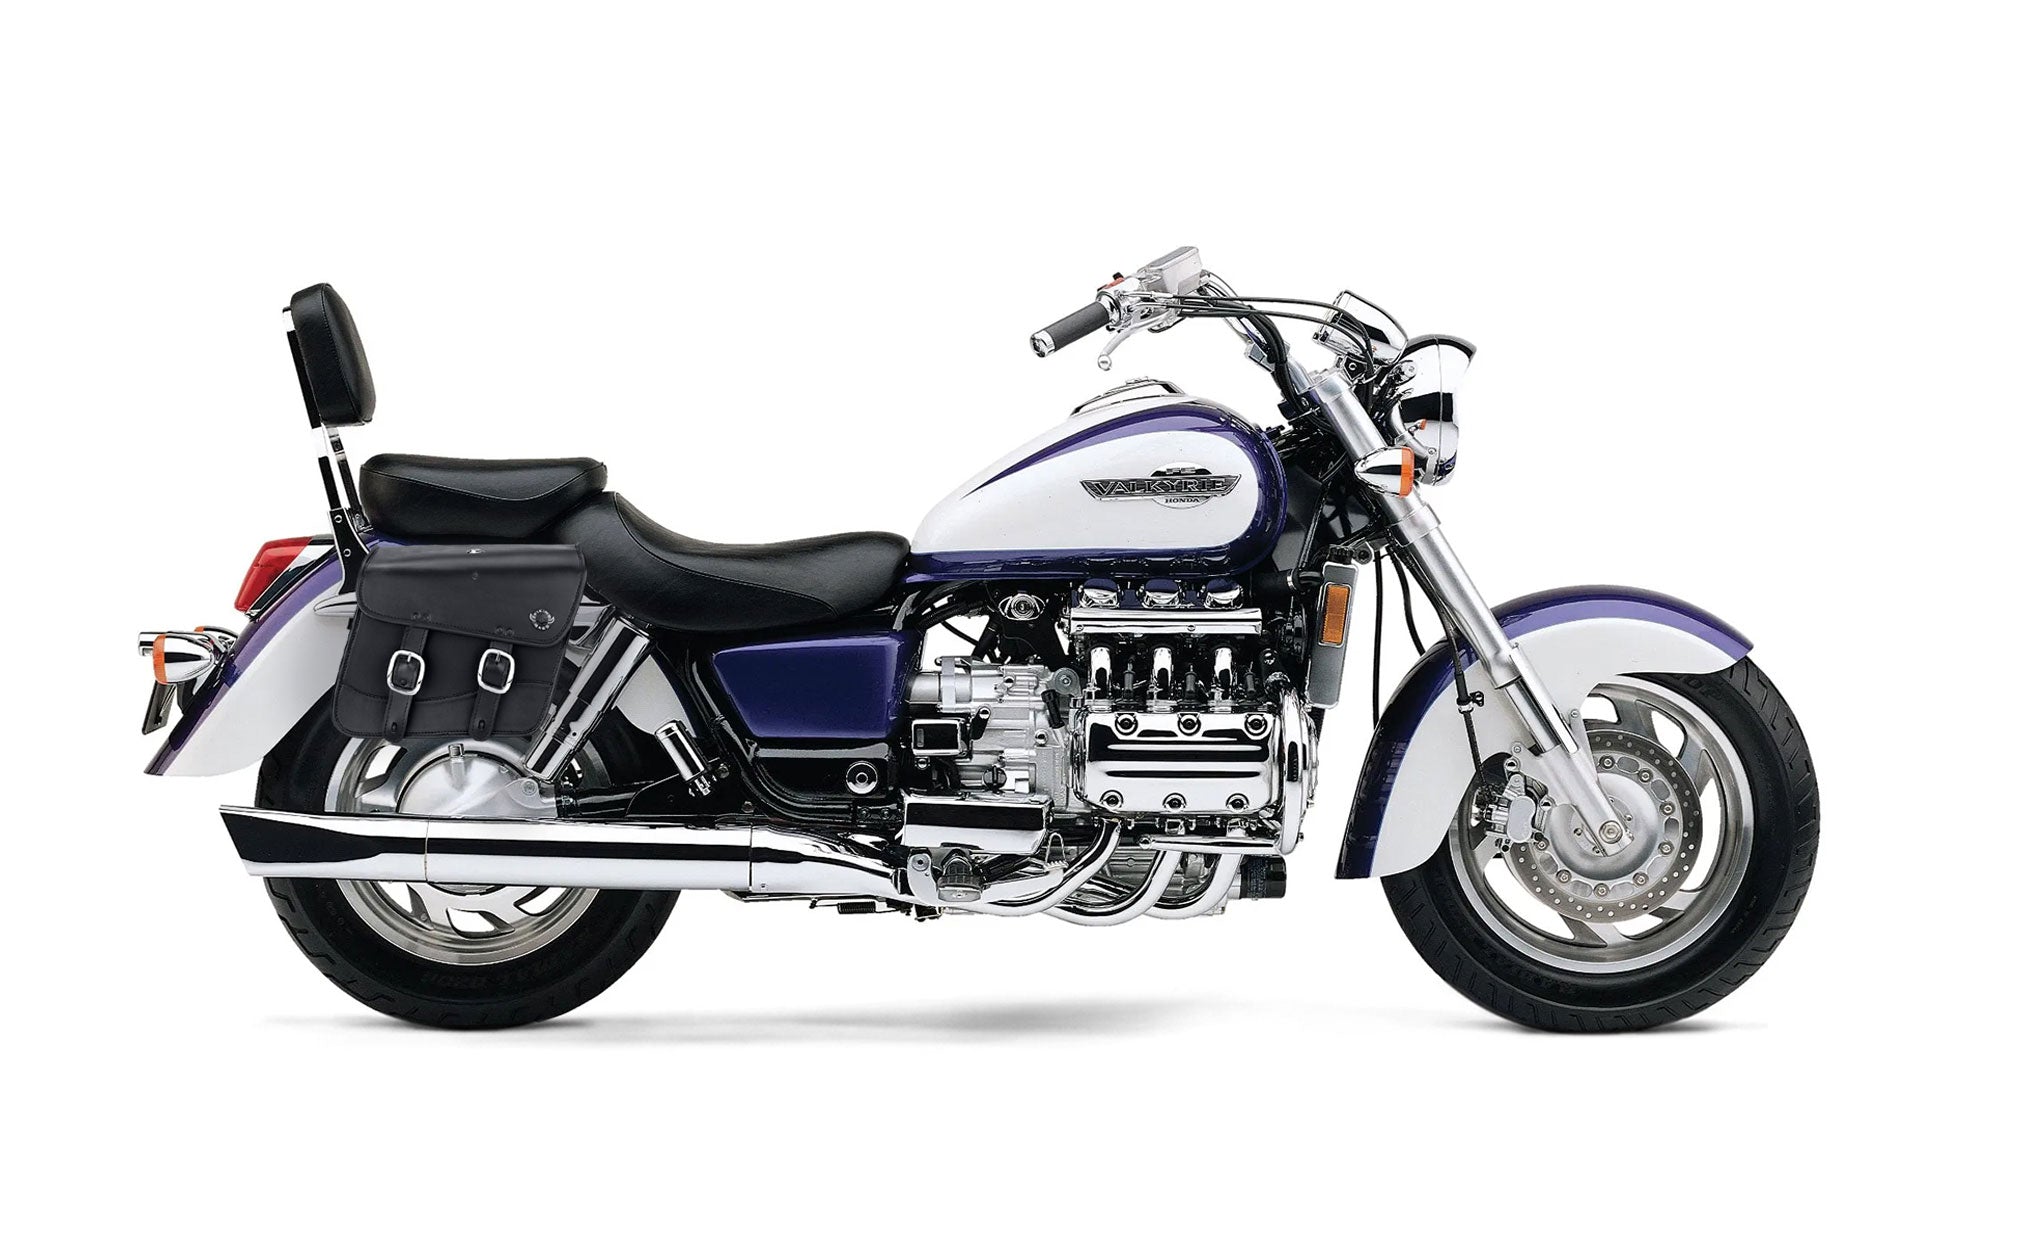 Viking Thor Medium Honda Valkyrie 1500 Interstate Leather Motorcycle Saddlebags on Bike Photo @expand